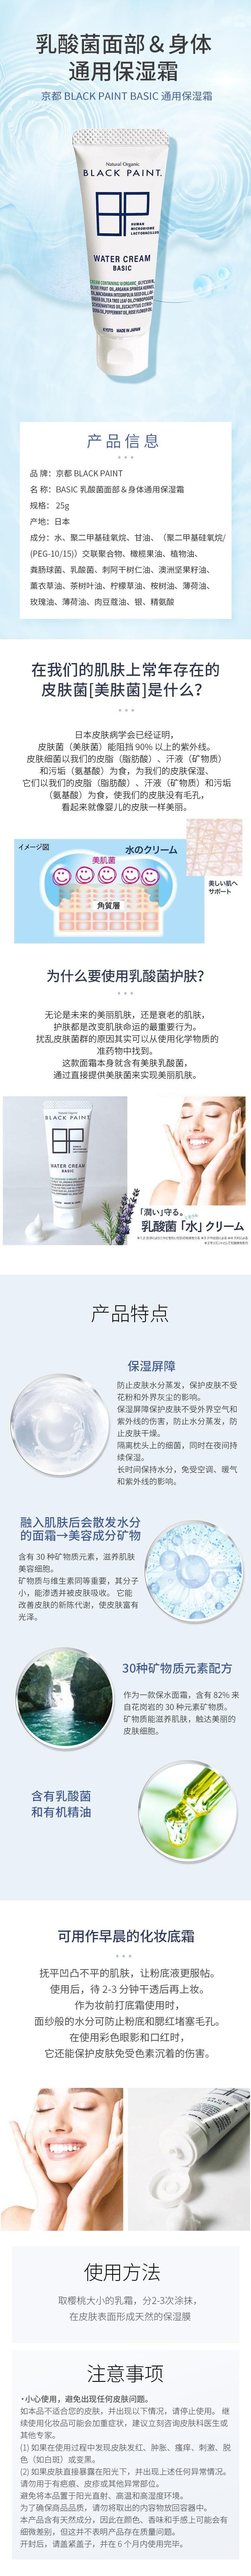 【日本直效郵件】BLACK PAINT京都 乳酸菌BASIC系列 臉部身體通用保濕霜 25g